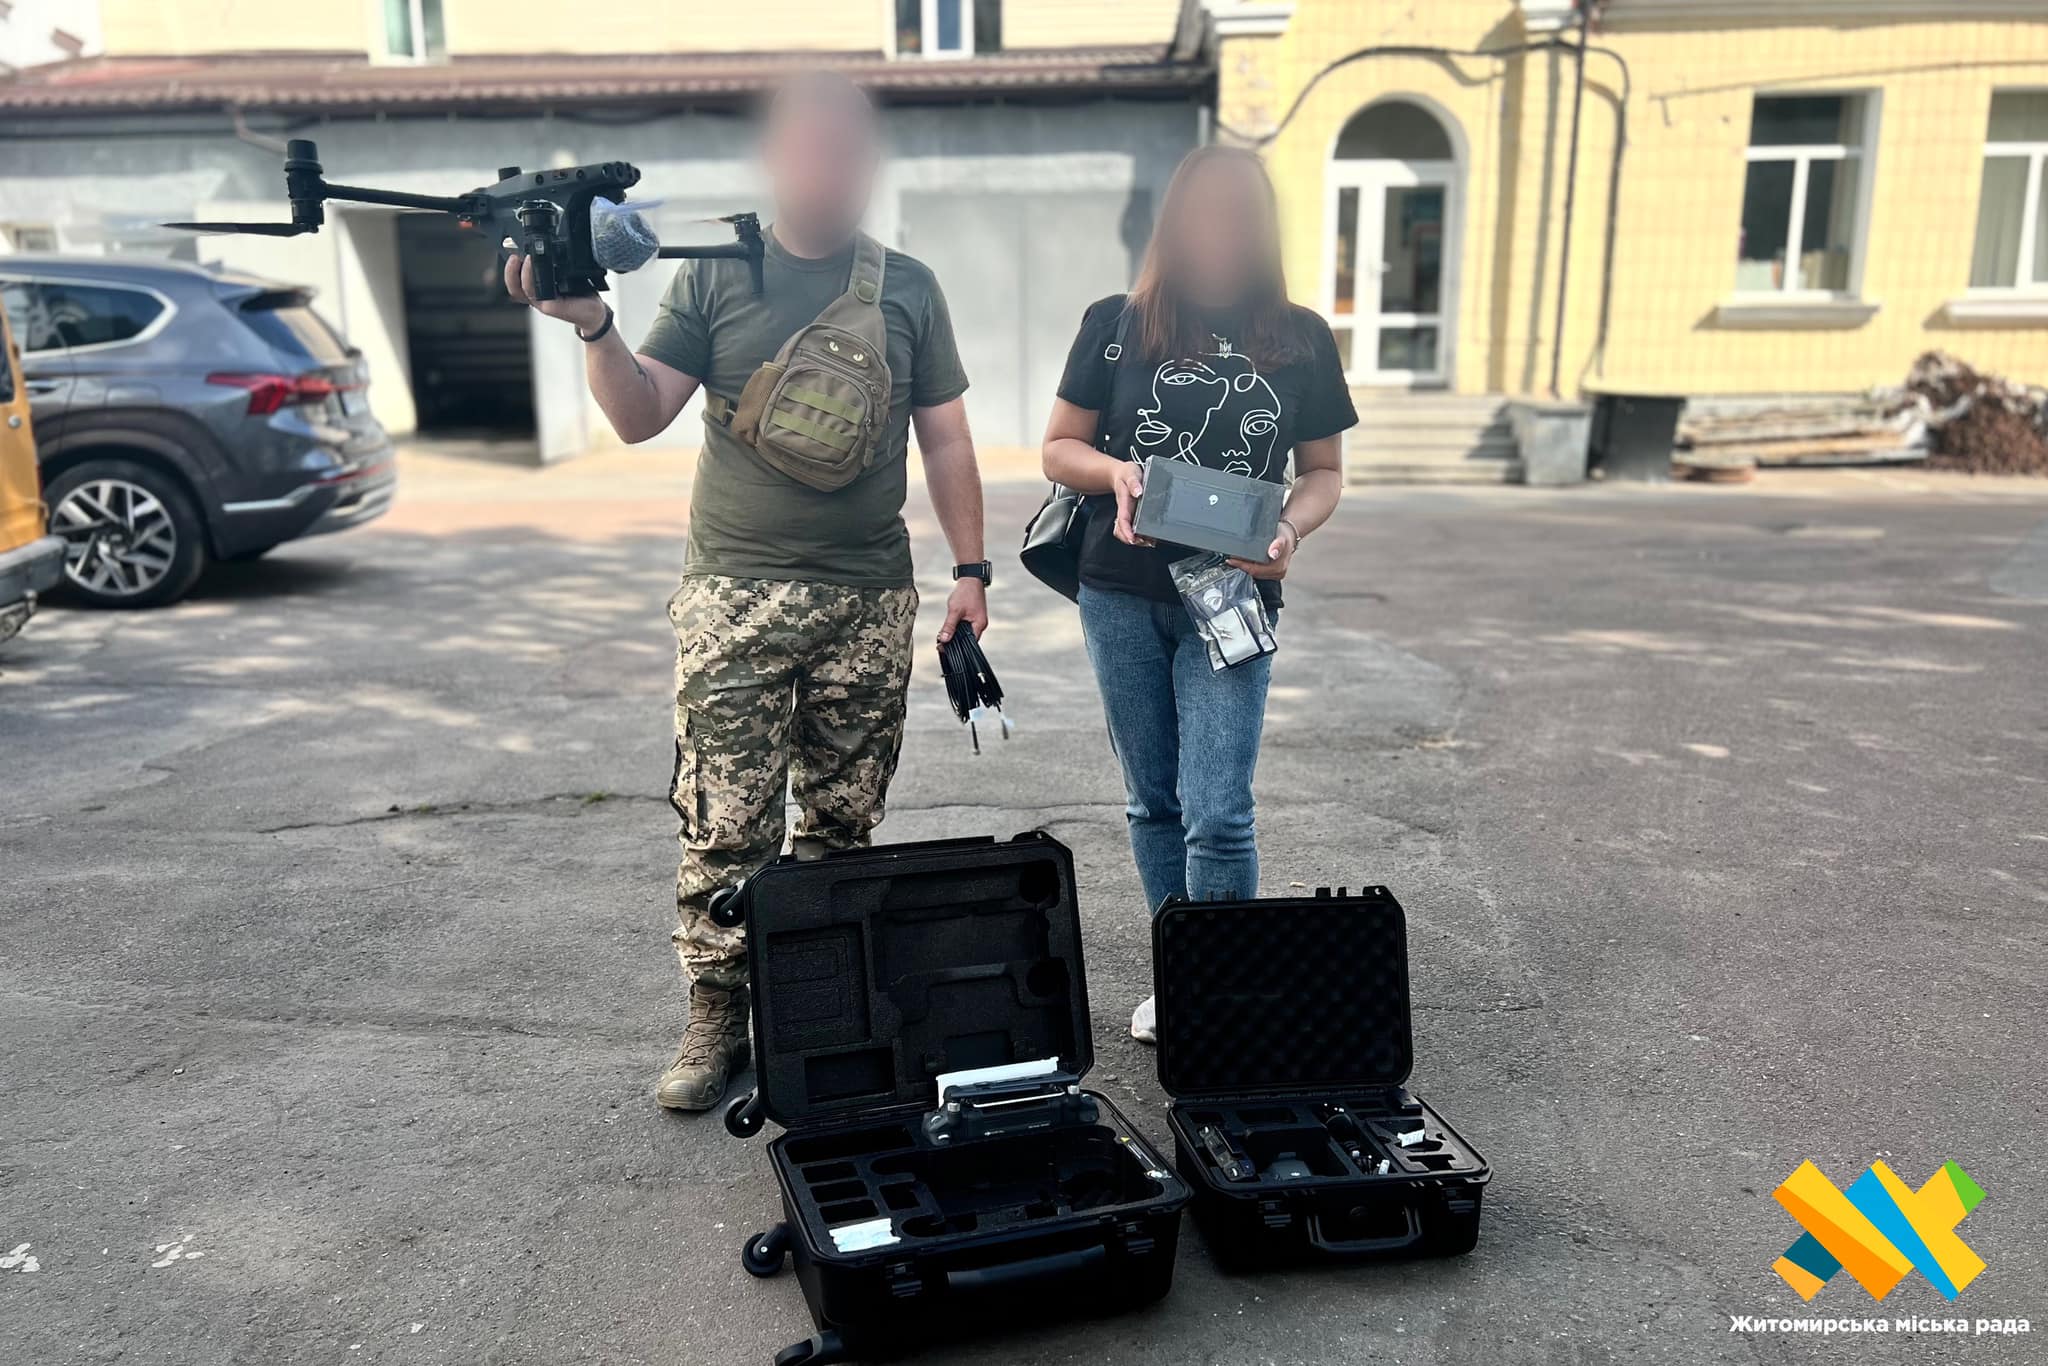 132-му окремому розвідувальному батальйону ДШВ передали 2 дрона та комплект підсилення звʼязку, закуплені коштом місцевого бюджету